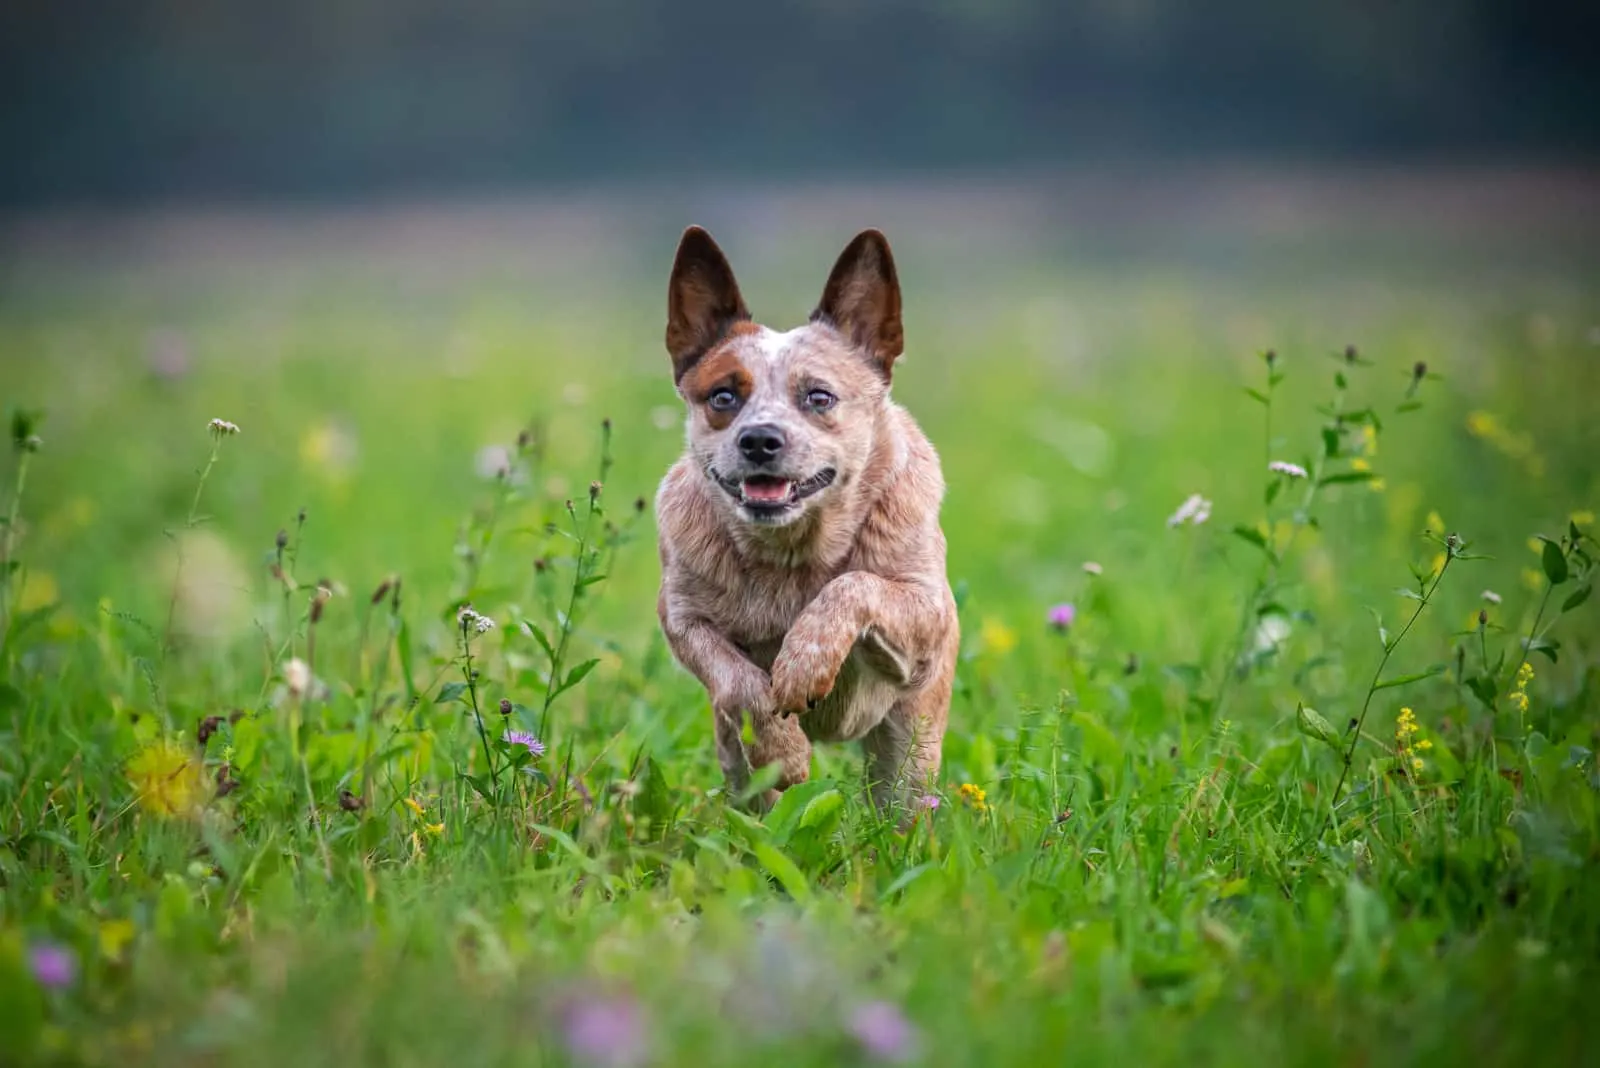 the adorable dog runs across the meadow